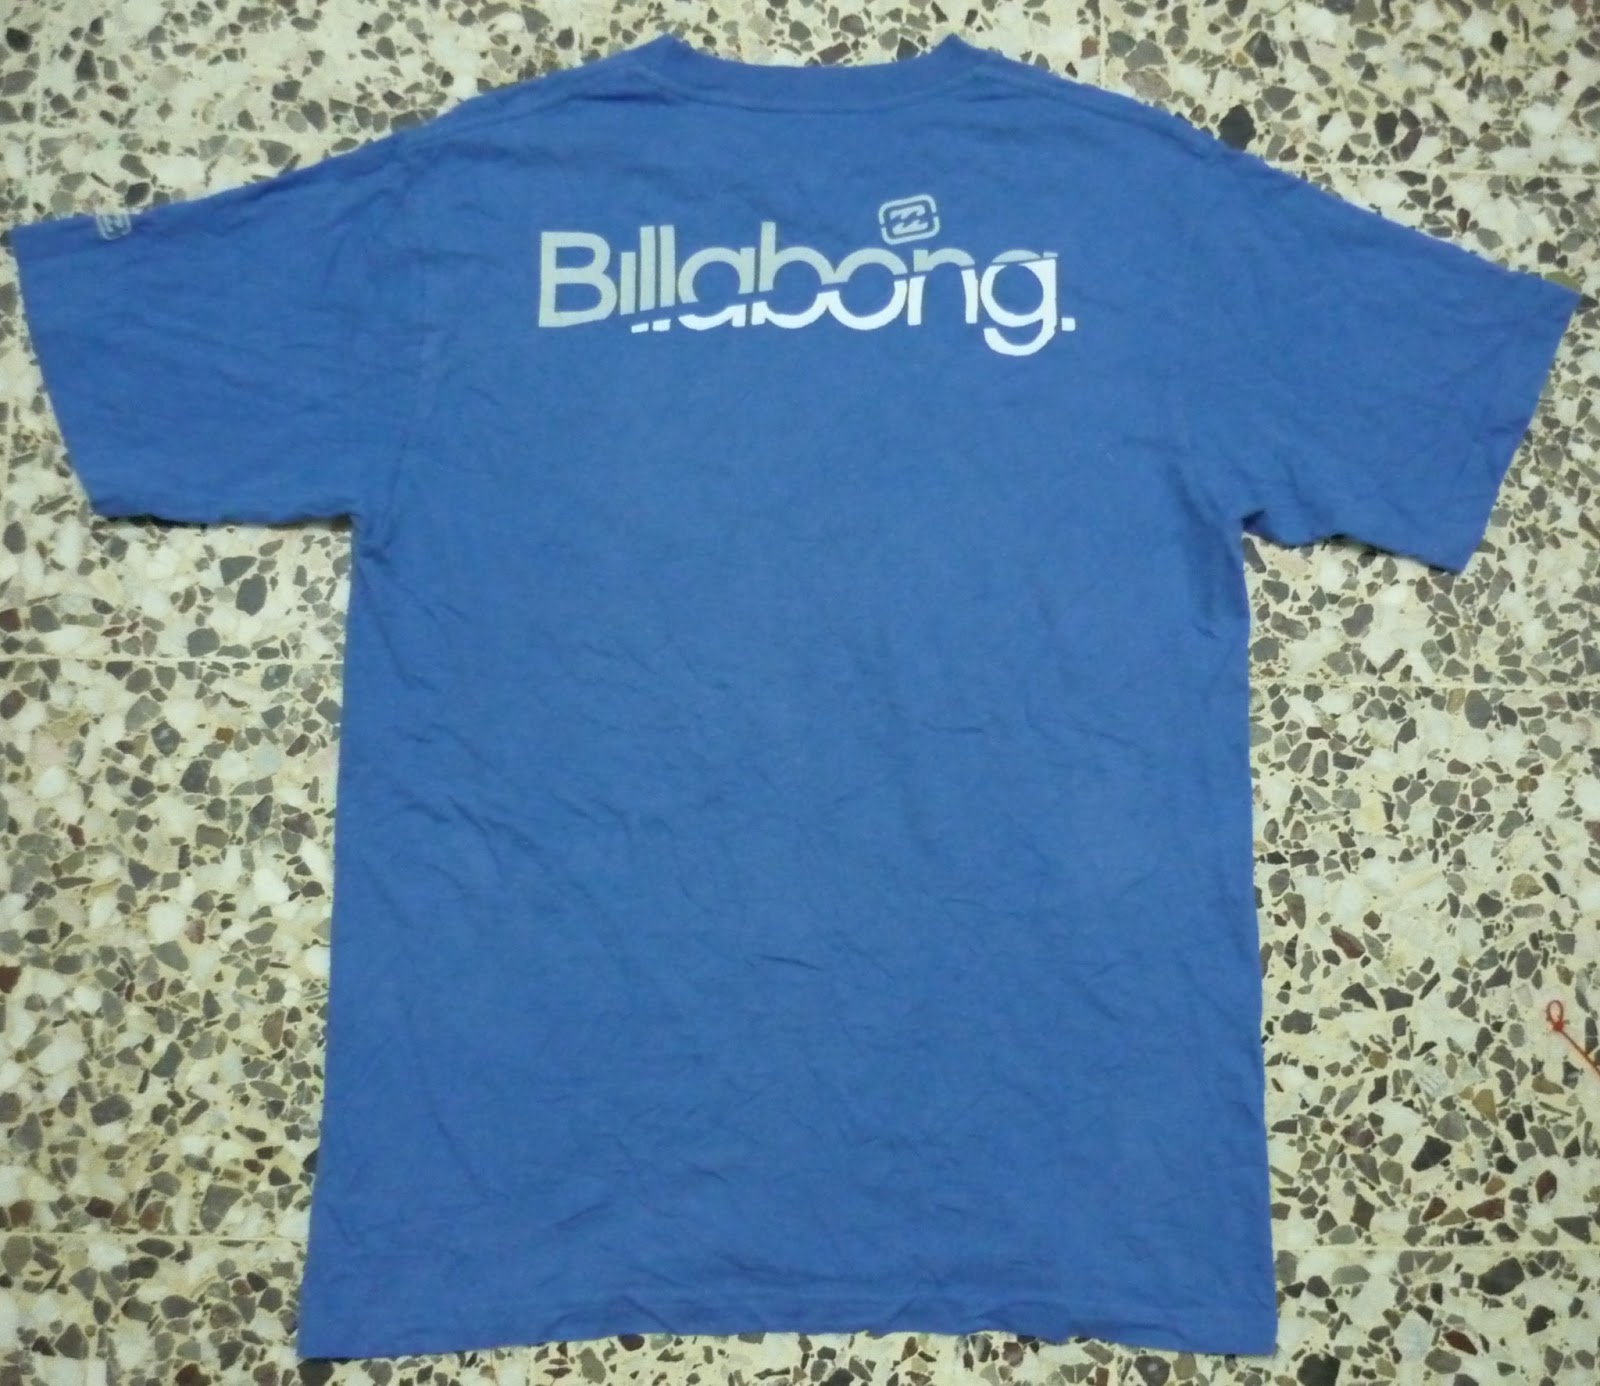 Clayback Bush Thrift Store: [T Shirt] Billabong Ocean Blue Medium Size